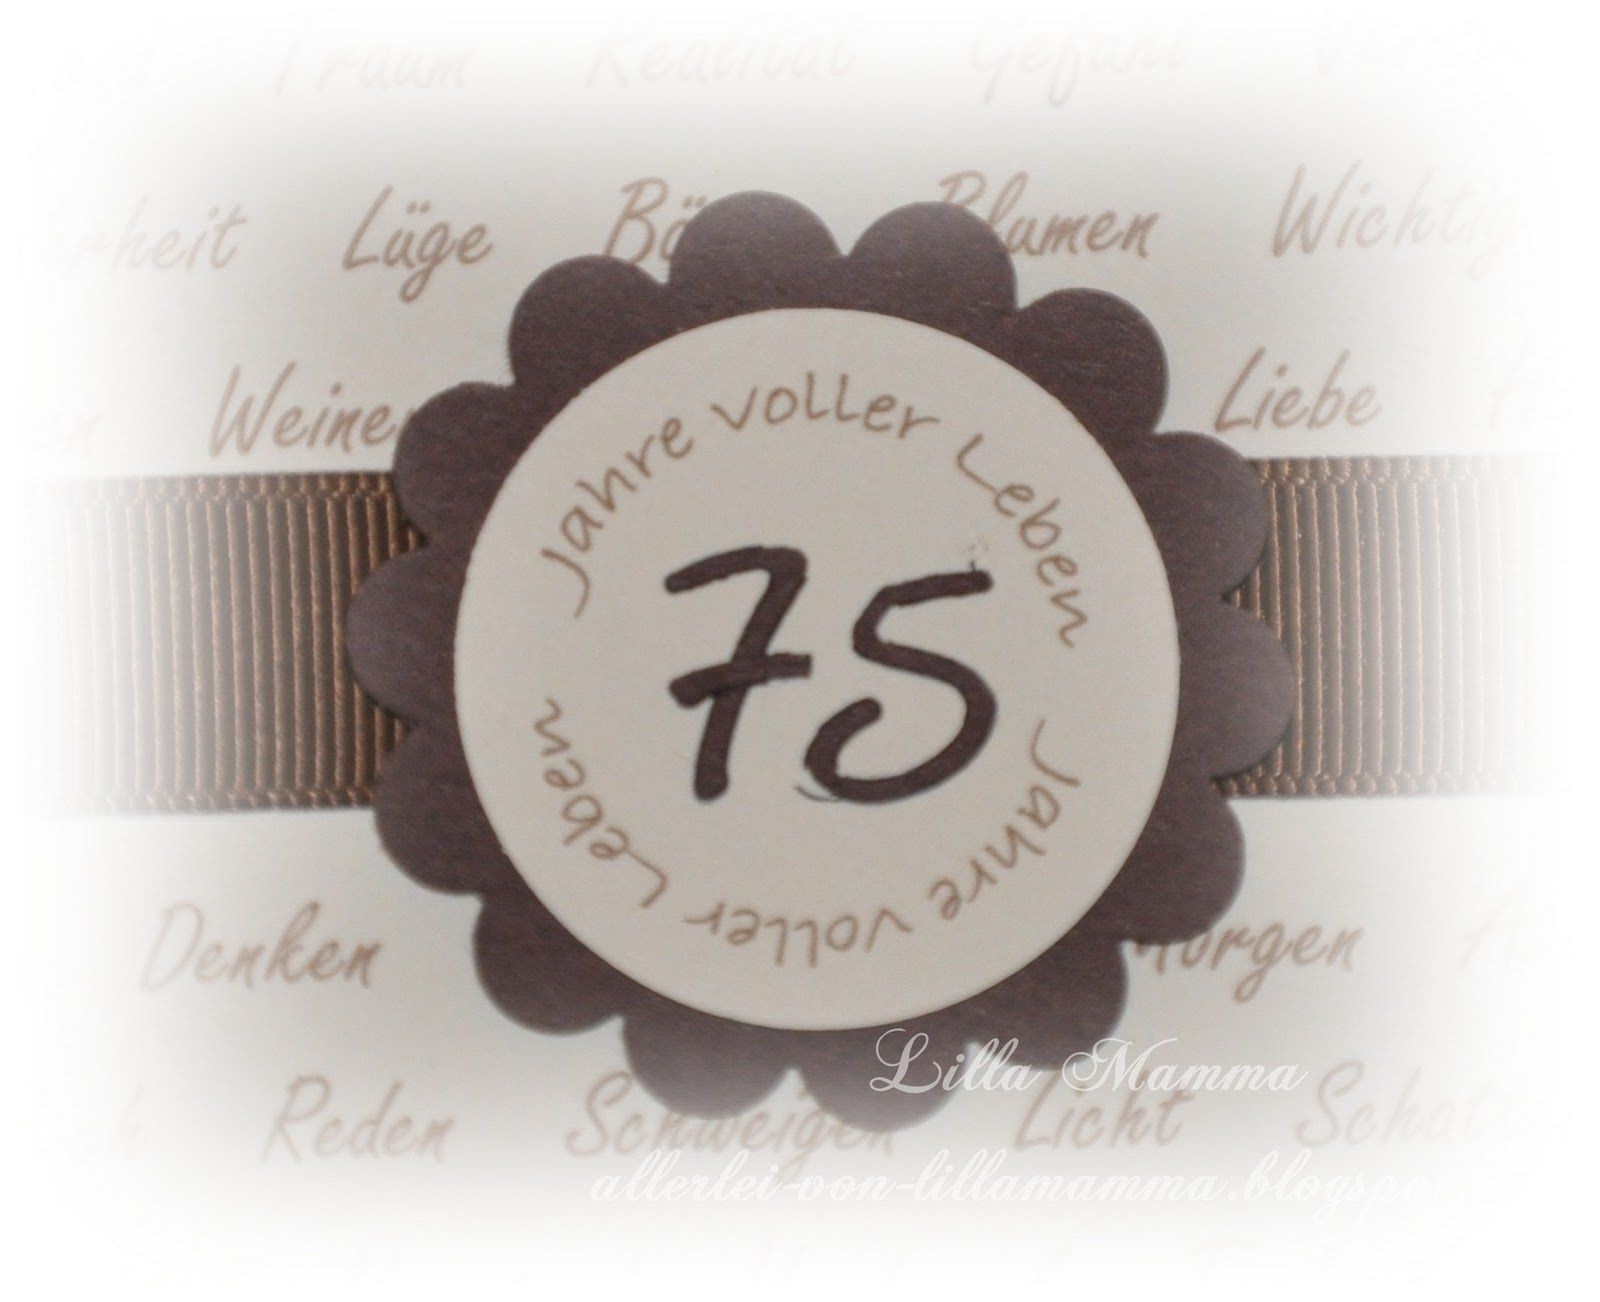 Geburtstagswünsche Zum 75. Geburtstag
 Einladungskarten Zum 75 Geburtstag